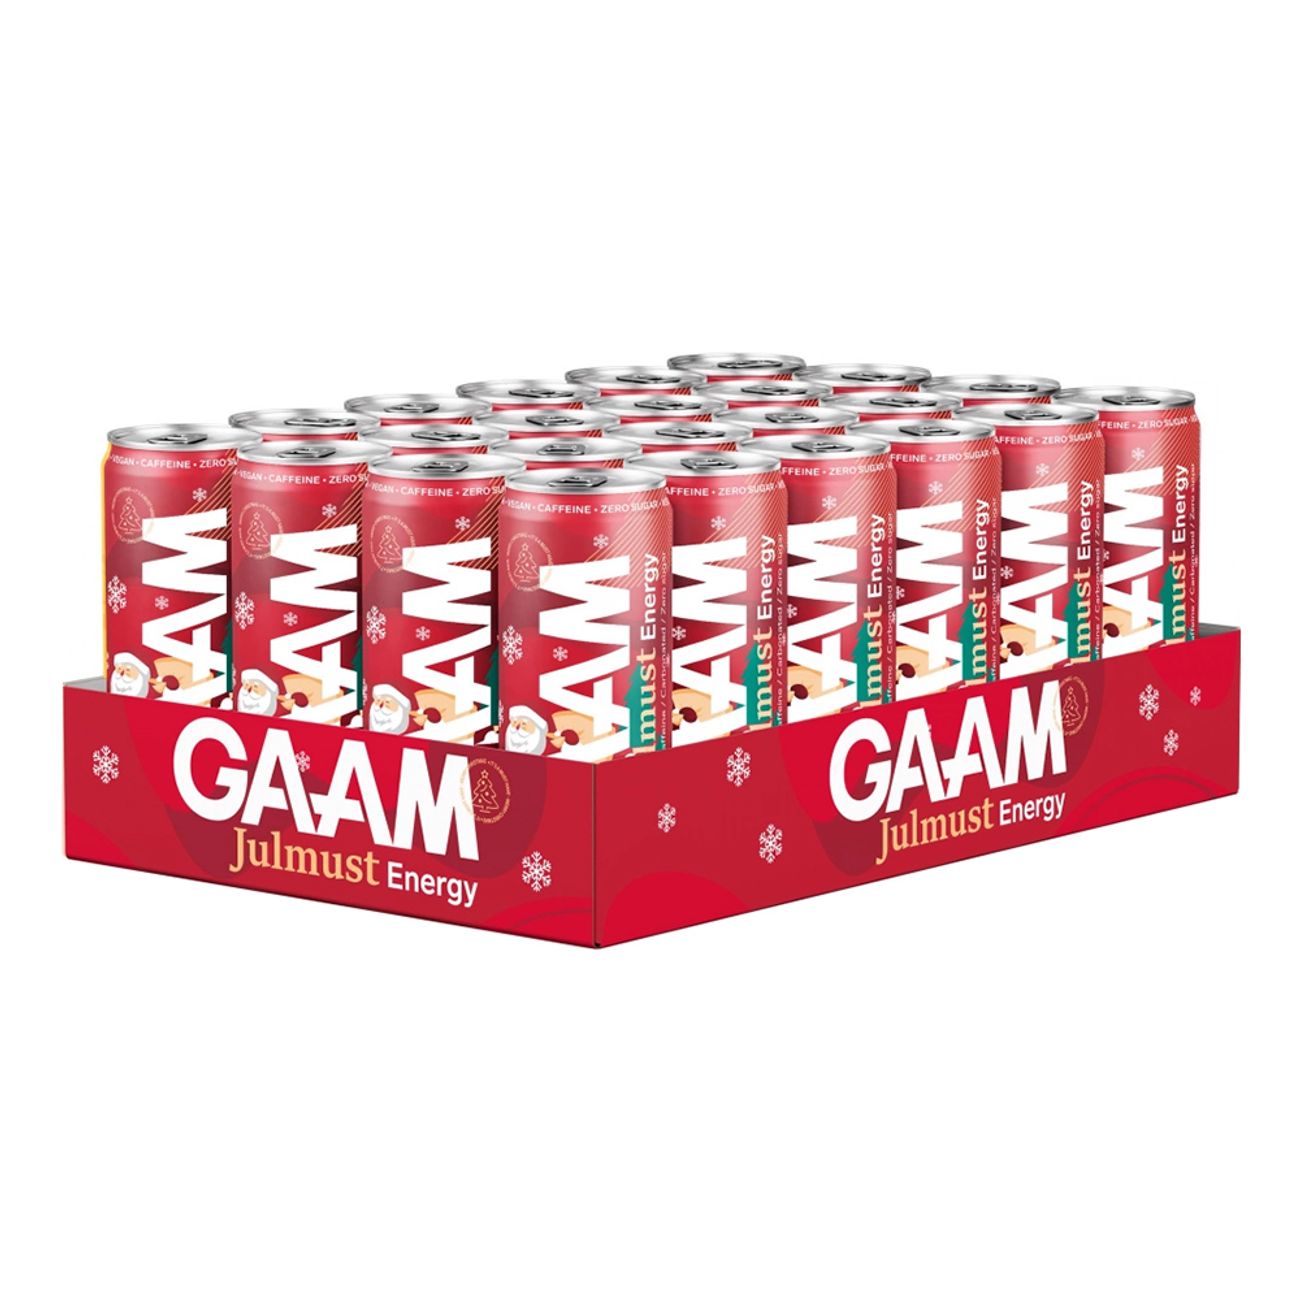 gaam-energy-julmust-69496-3